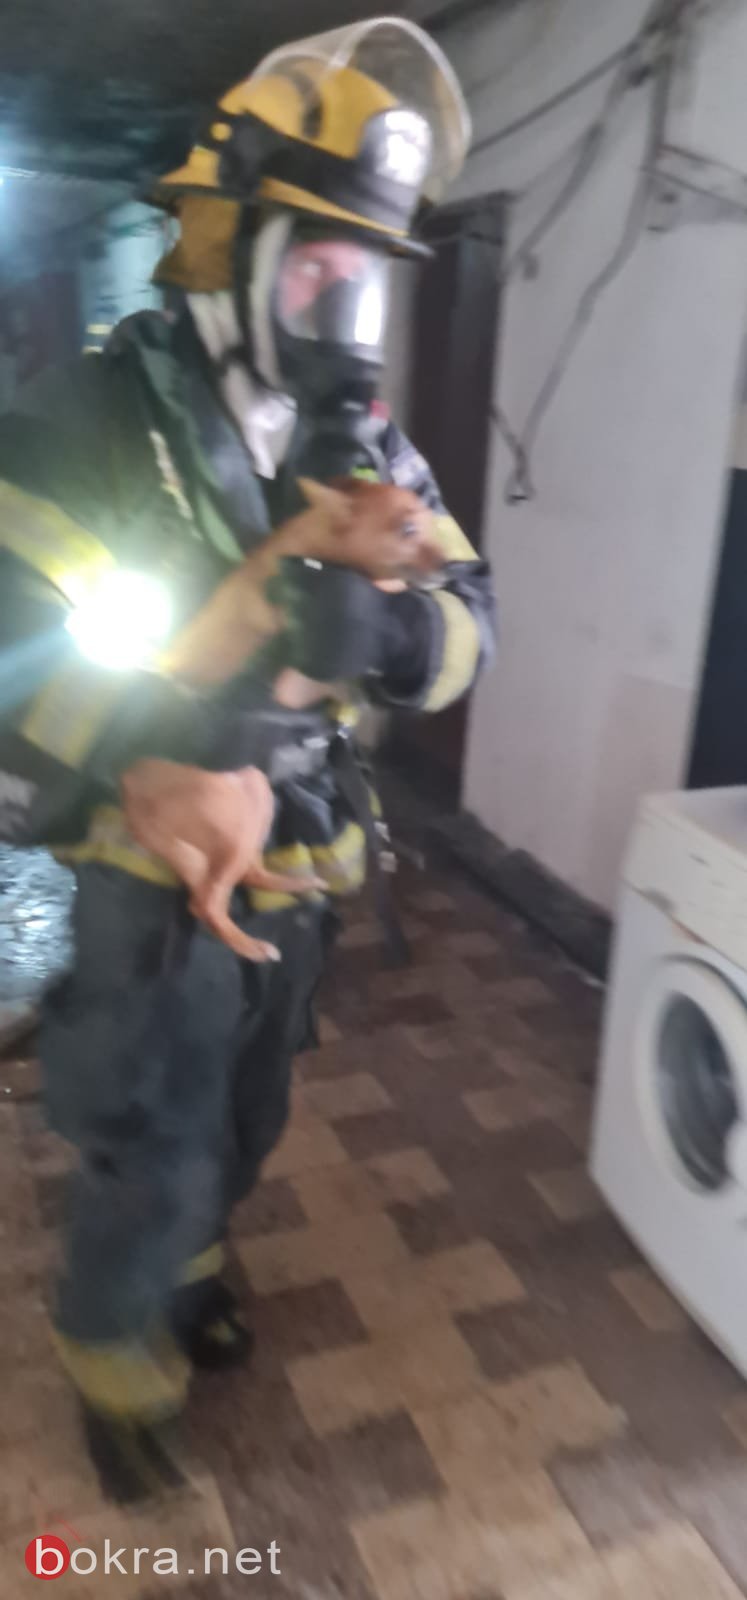 حيفا: اندلاع حريق داخل مبنى، وتخليص أم وأطفالها الثلاثة-1